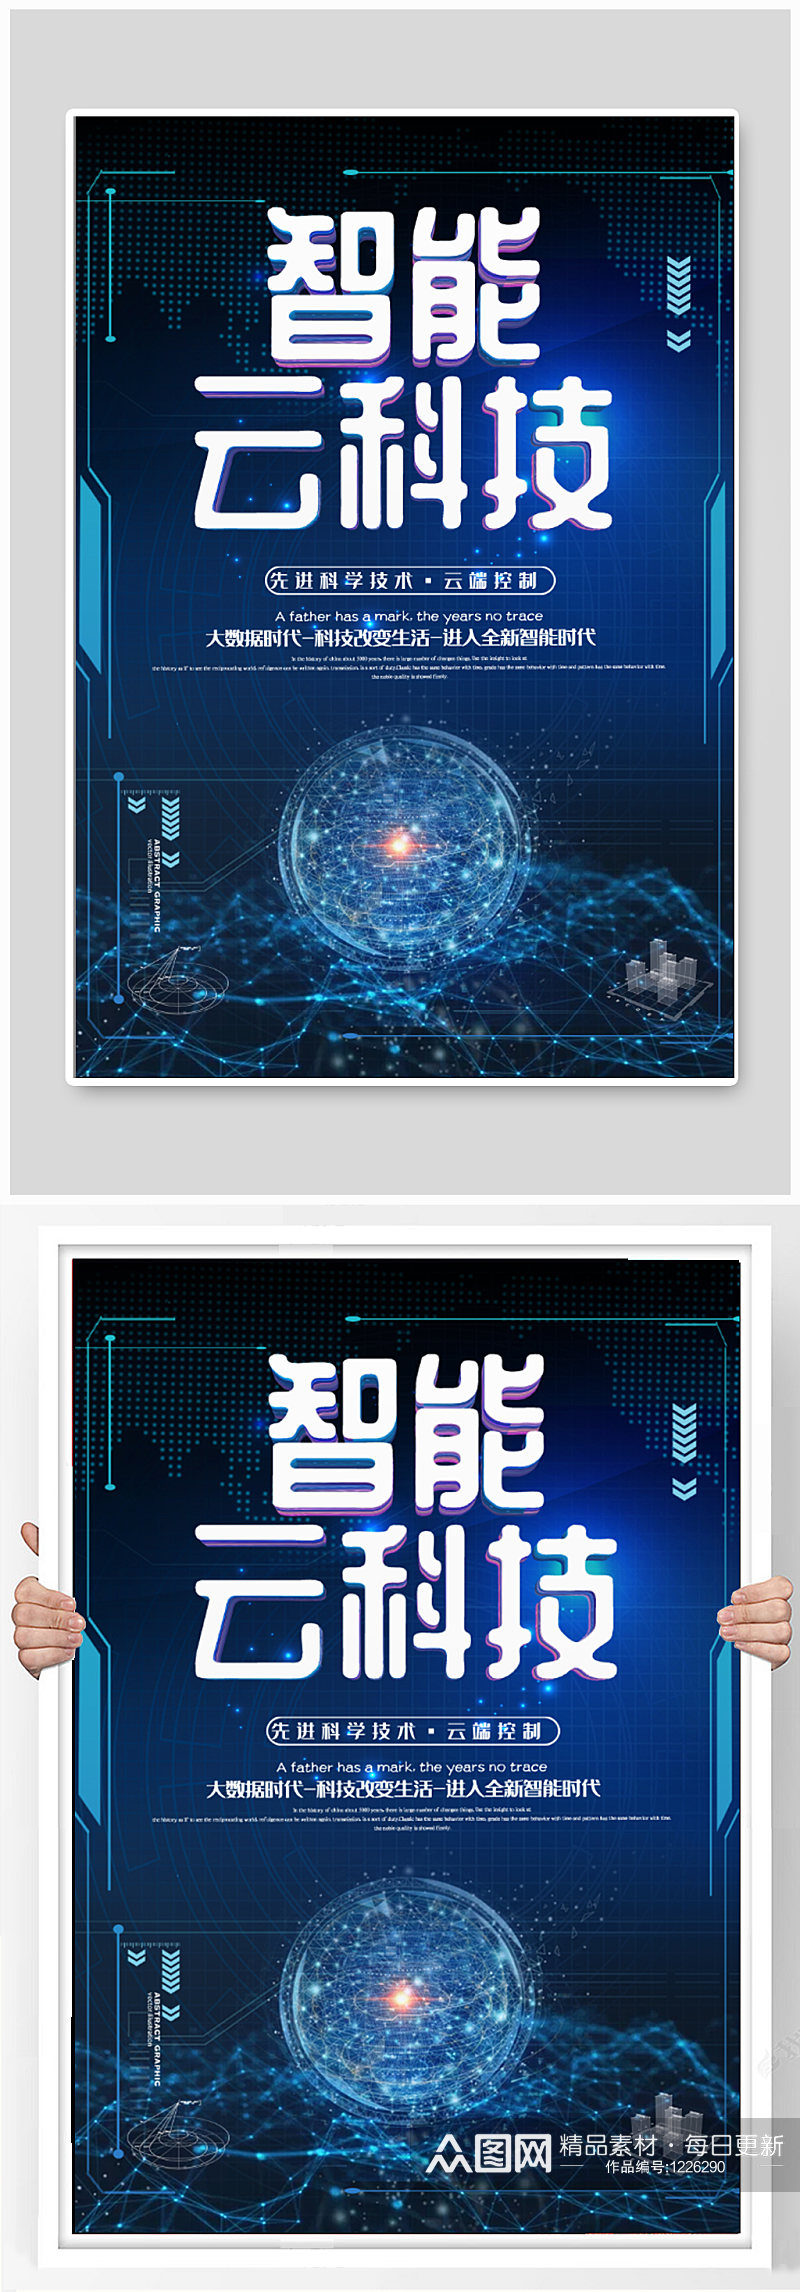 蓝色科技公司宣传海报素材